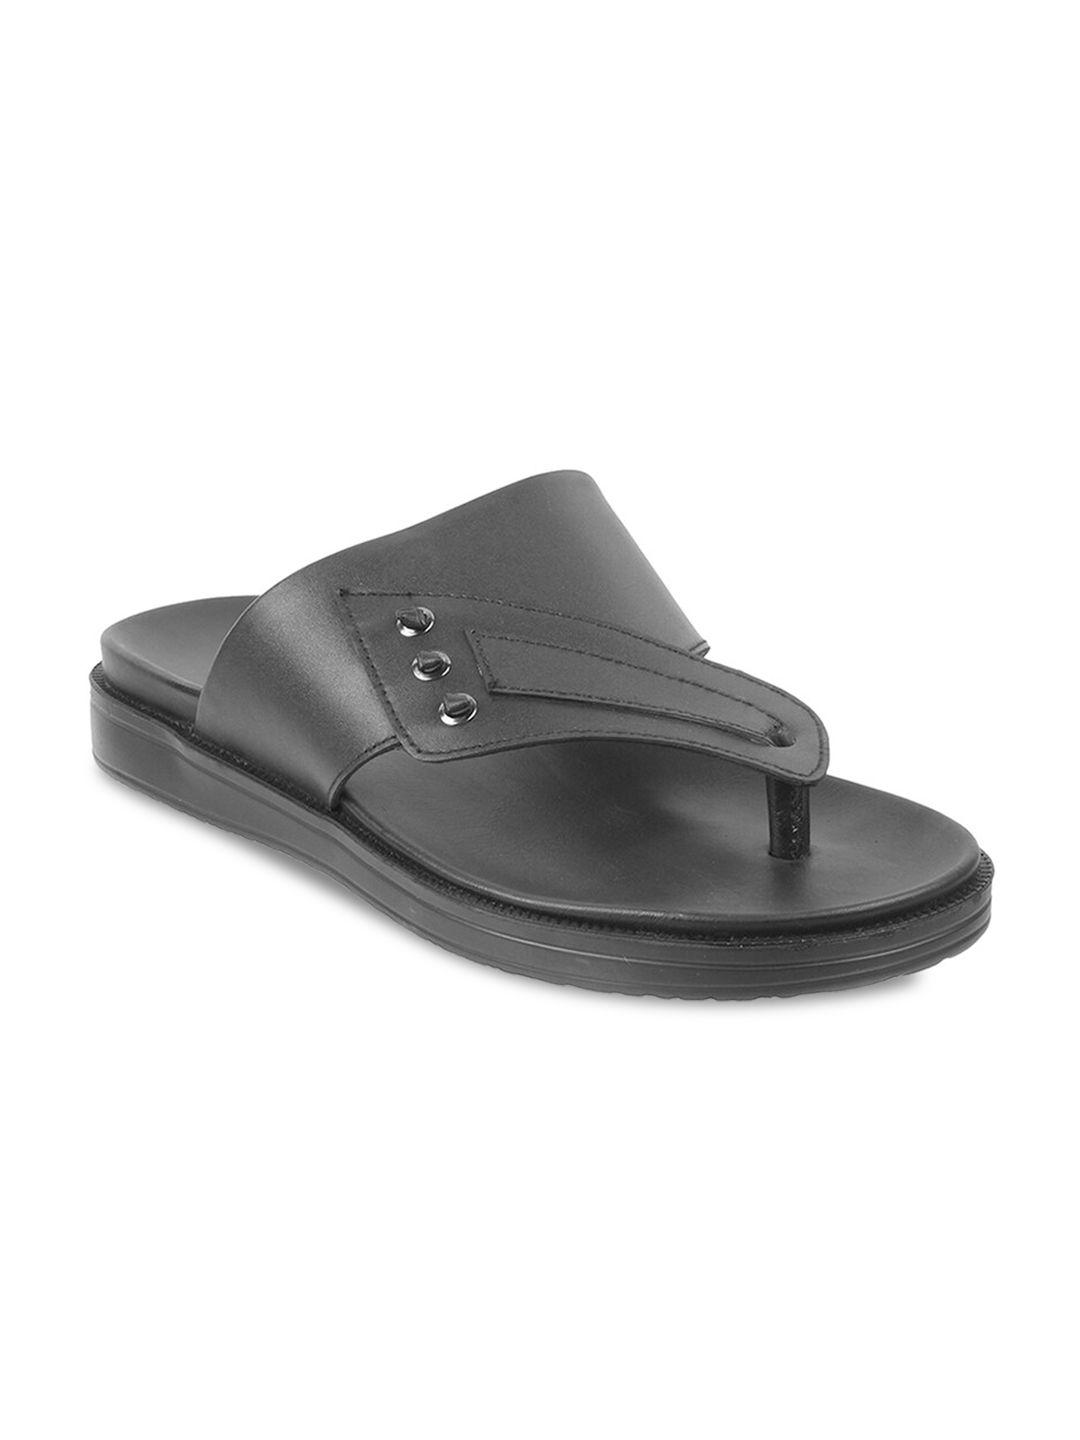 mochi men black leather comfort sandals